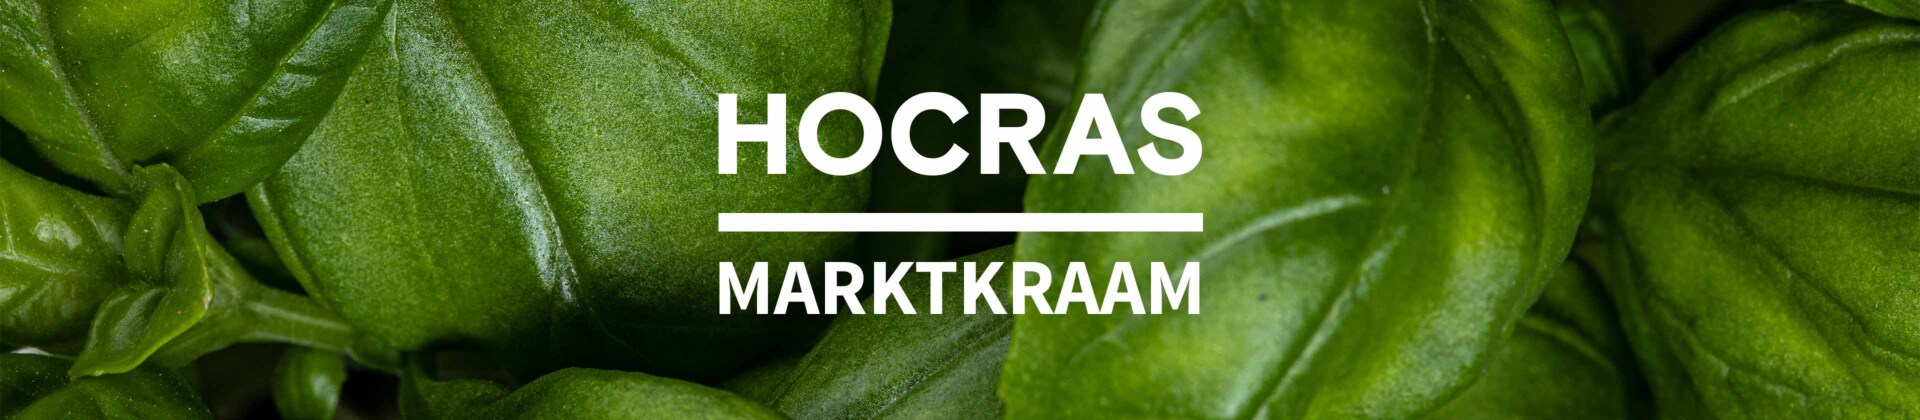 hocras-marktkraam